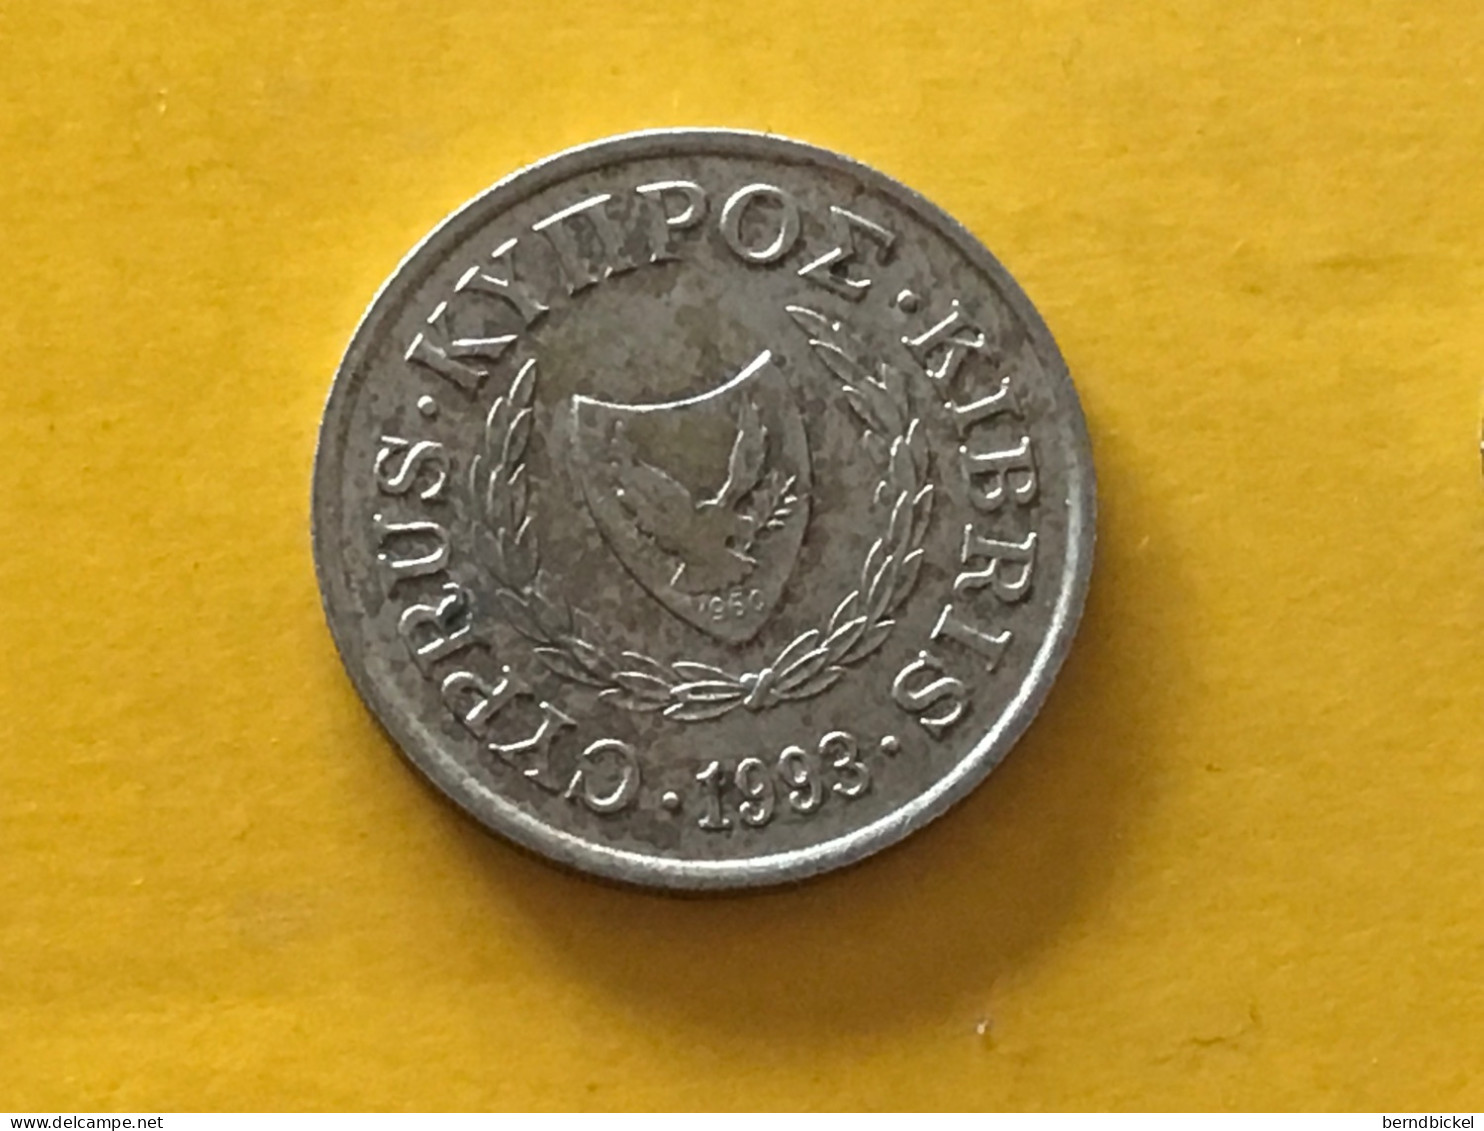 Münze Münzen Umlaufmünze Zypern 10 Cent 1993 - Chipre